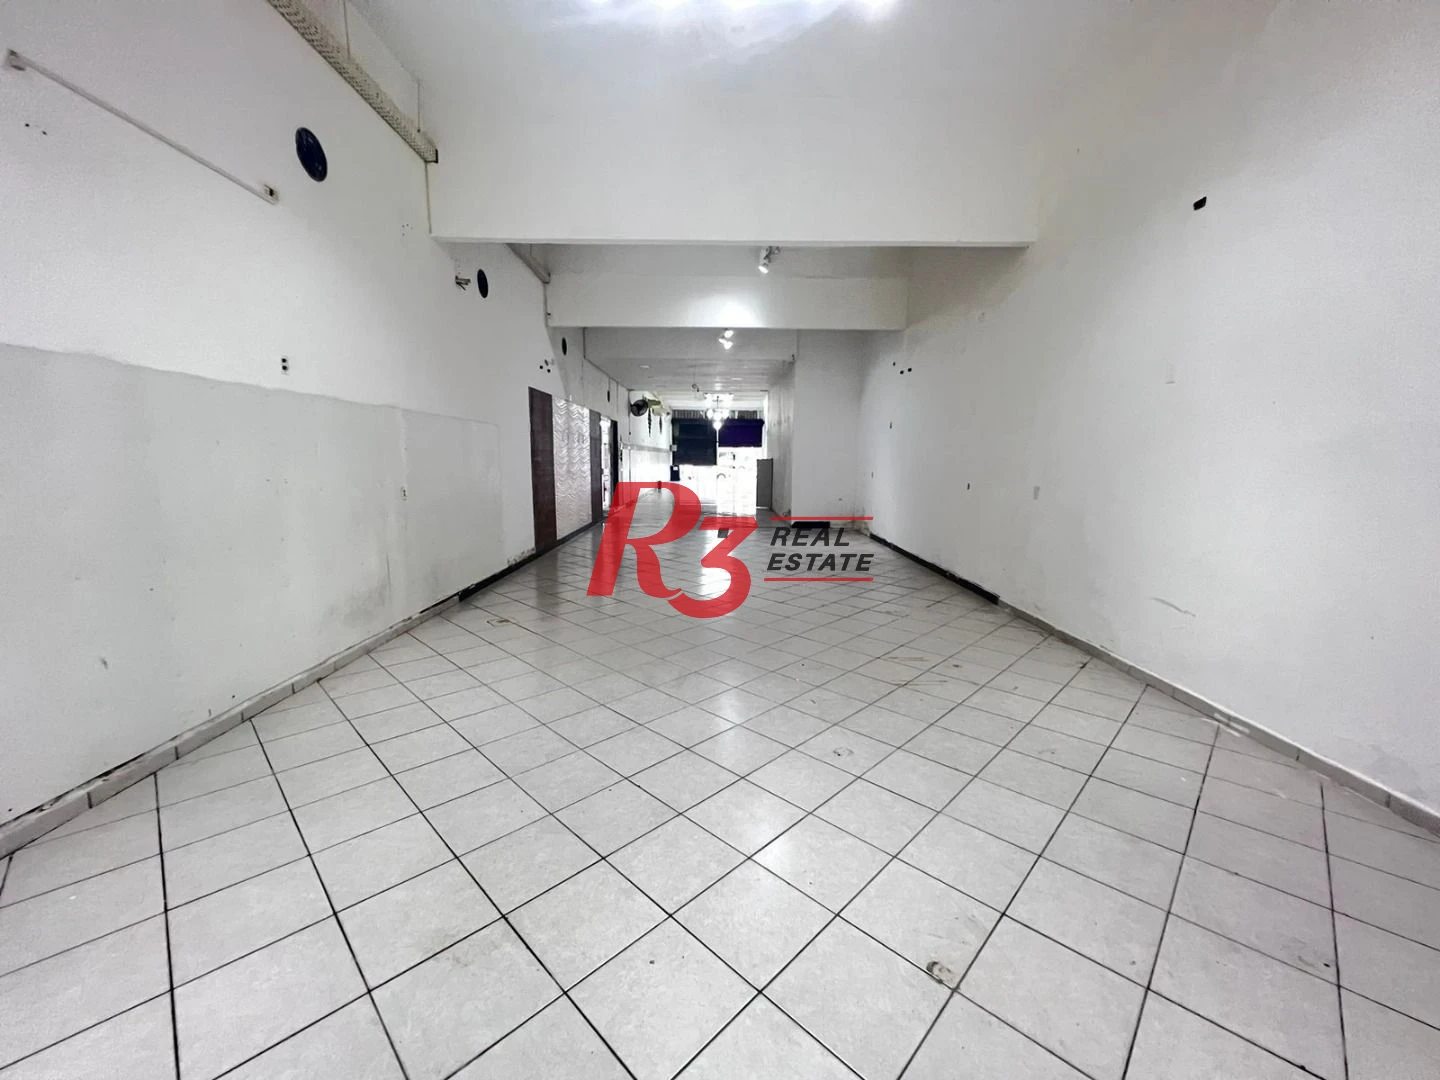 Loja para alugar, 450 m² por R$ 10.000,00/mês - Aparecida - Santos/SP